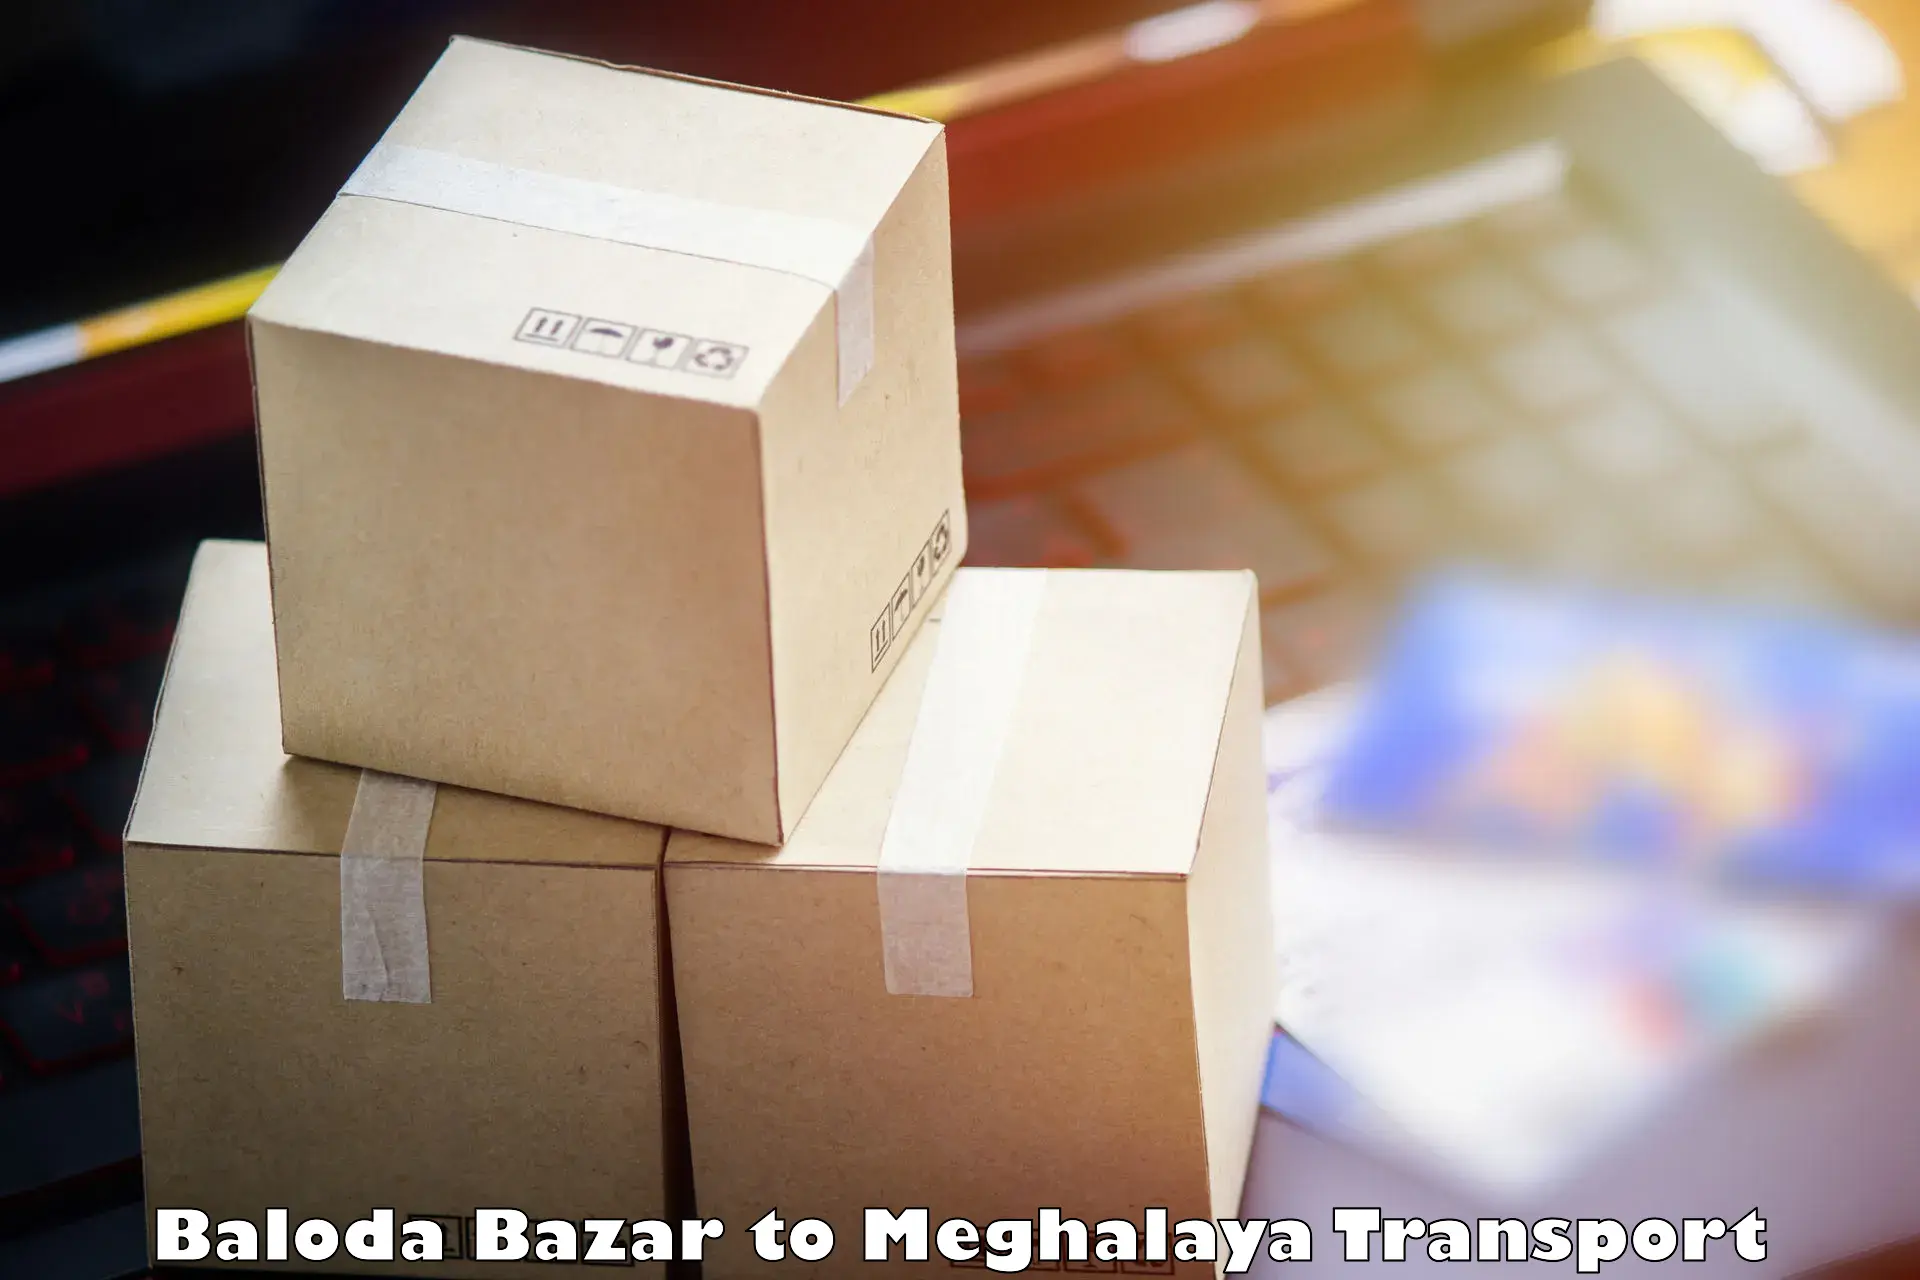 International cargo transportation services Baloda Bazar to Nongstoin